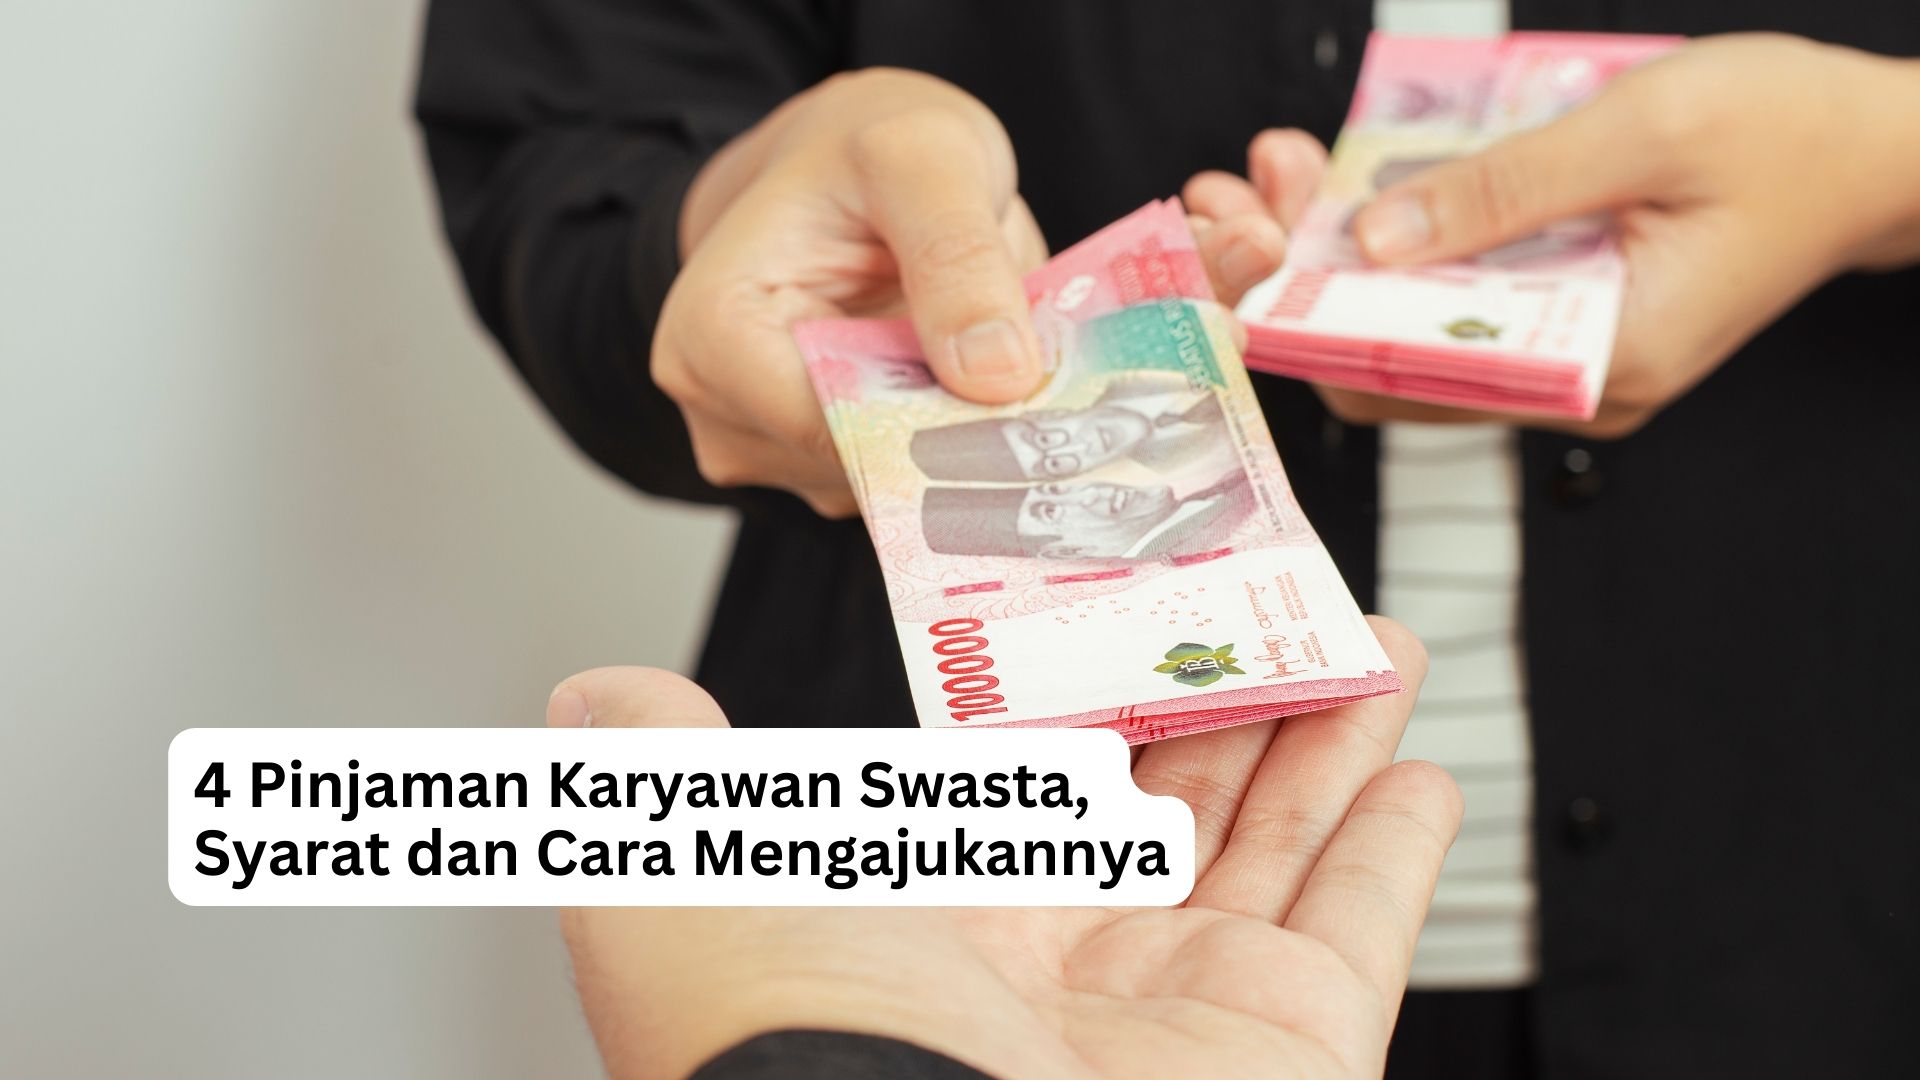 You are currently viewing 4 Pinjaman Karyawan Swasta, Syarat dan Cara Mengajukannya